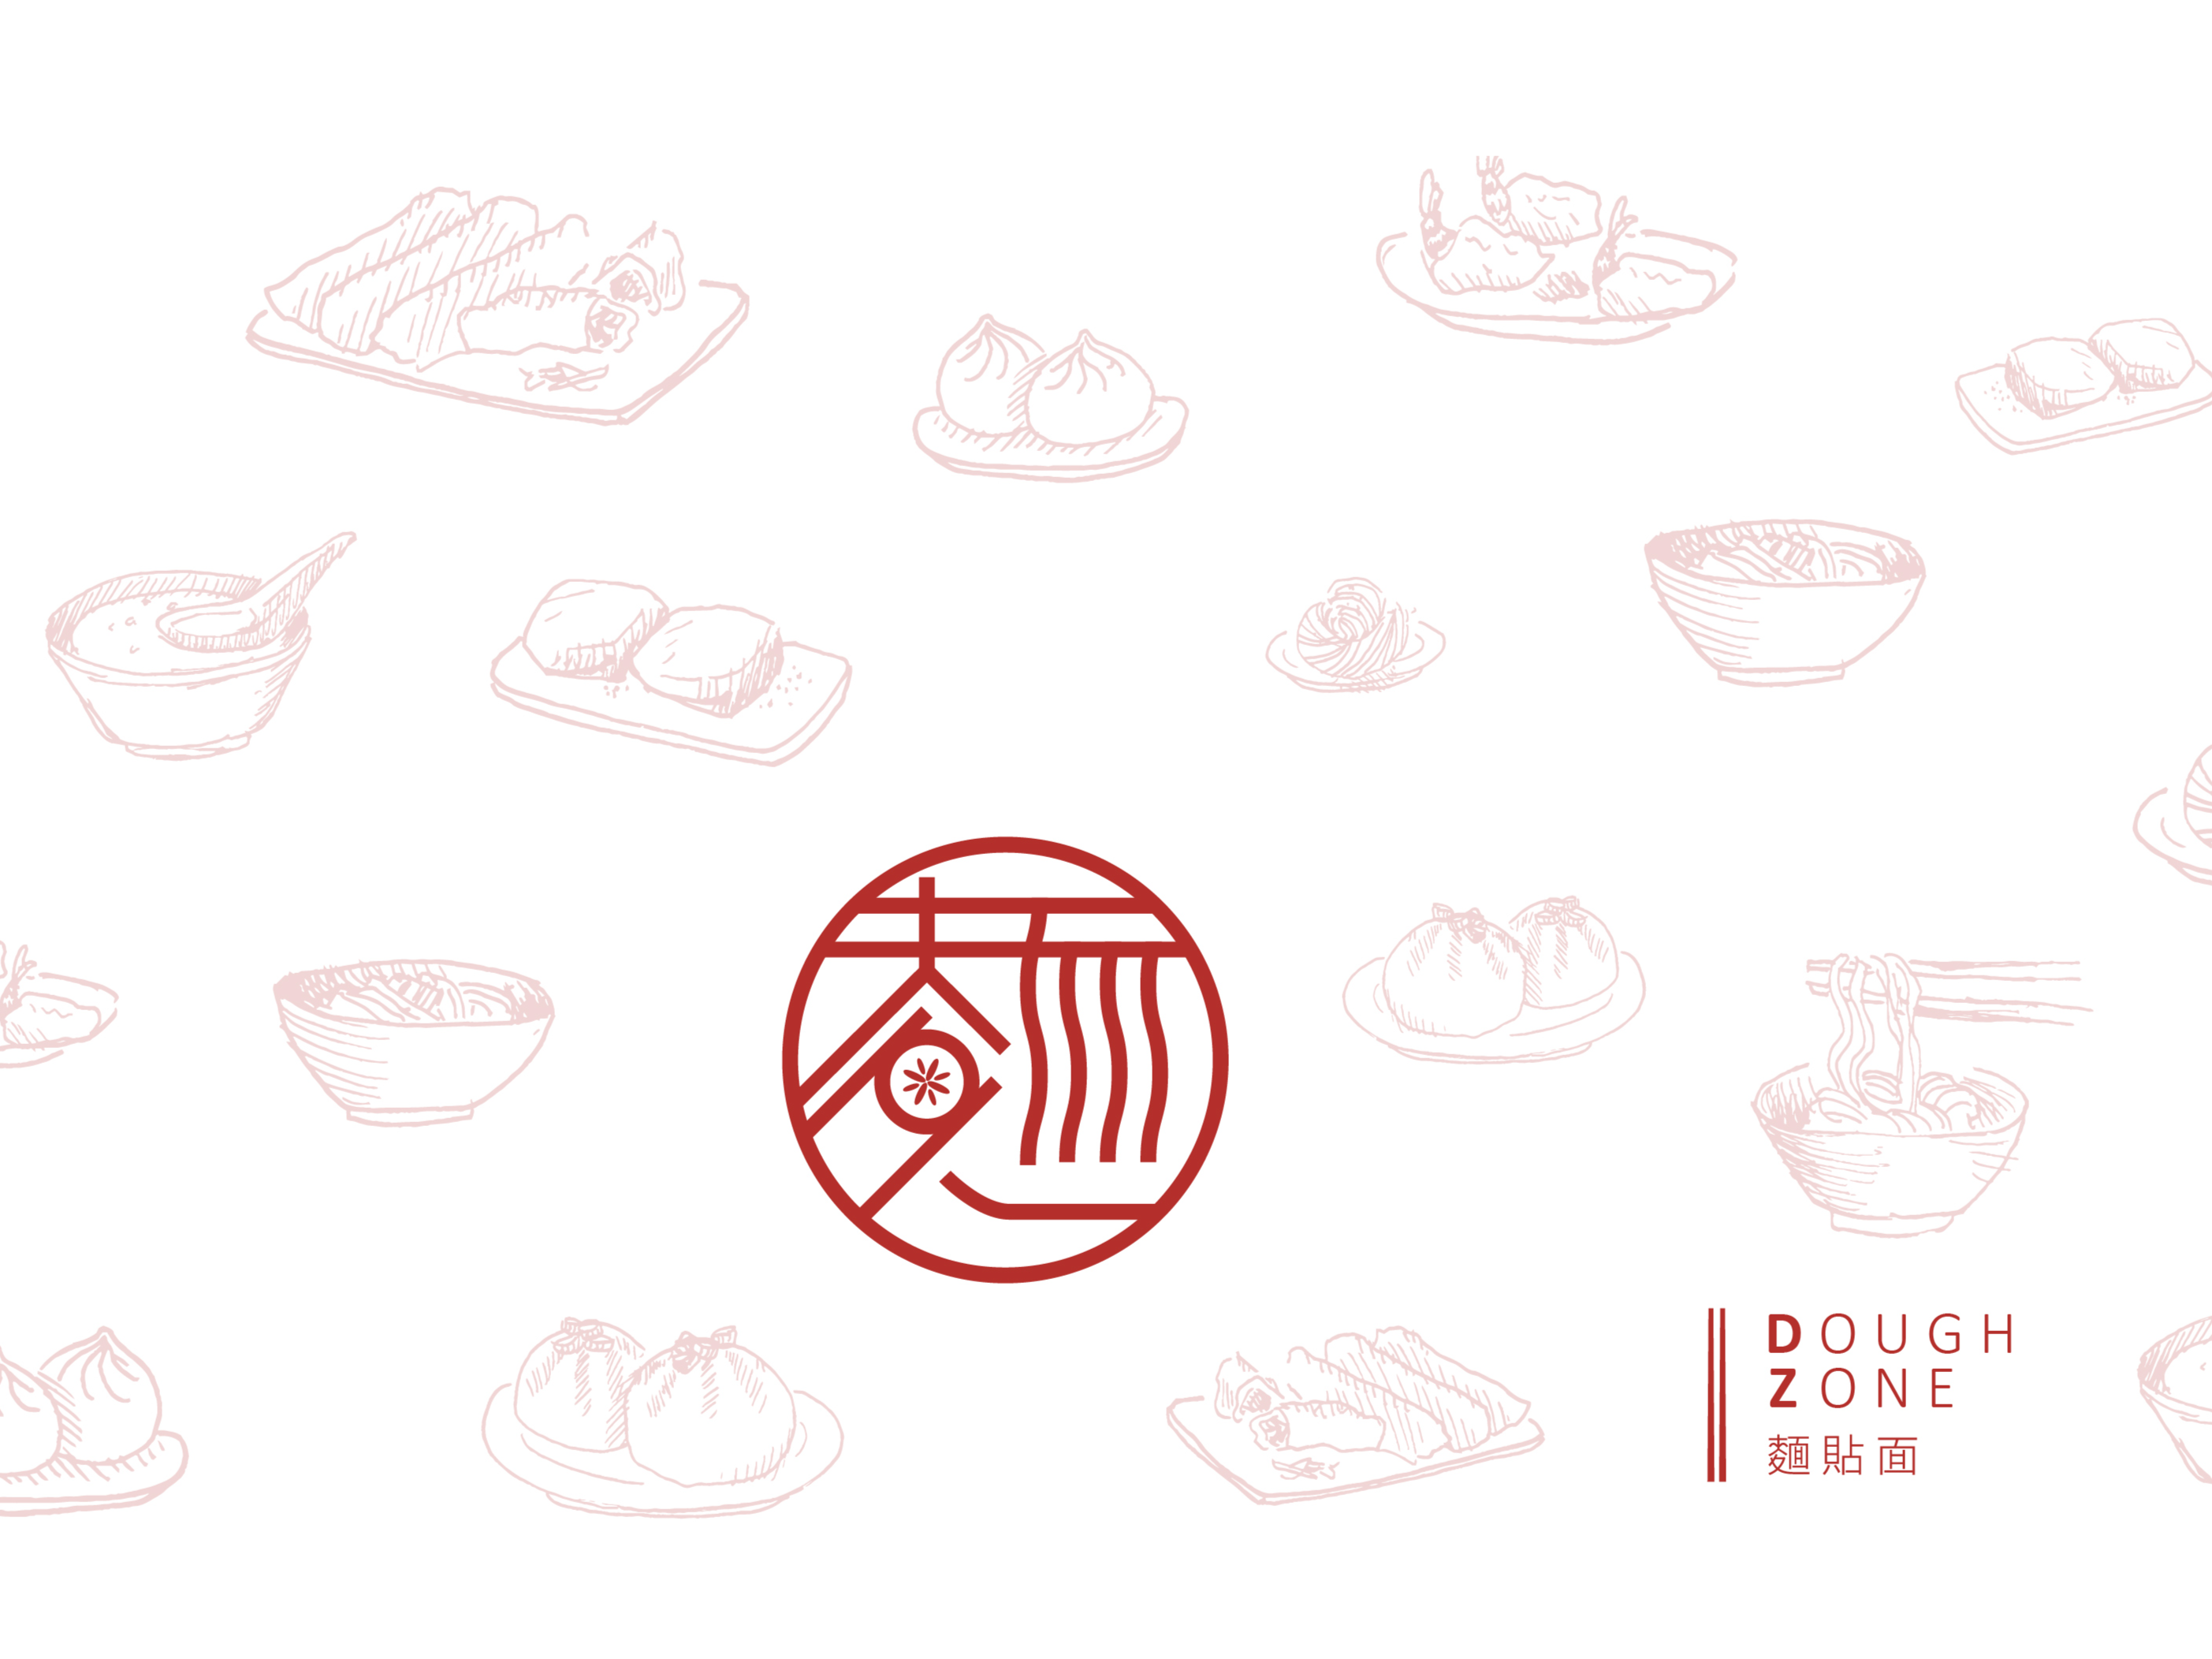 Cover of DOUGH ZONE restaurant branding design.